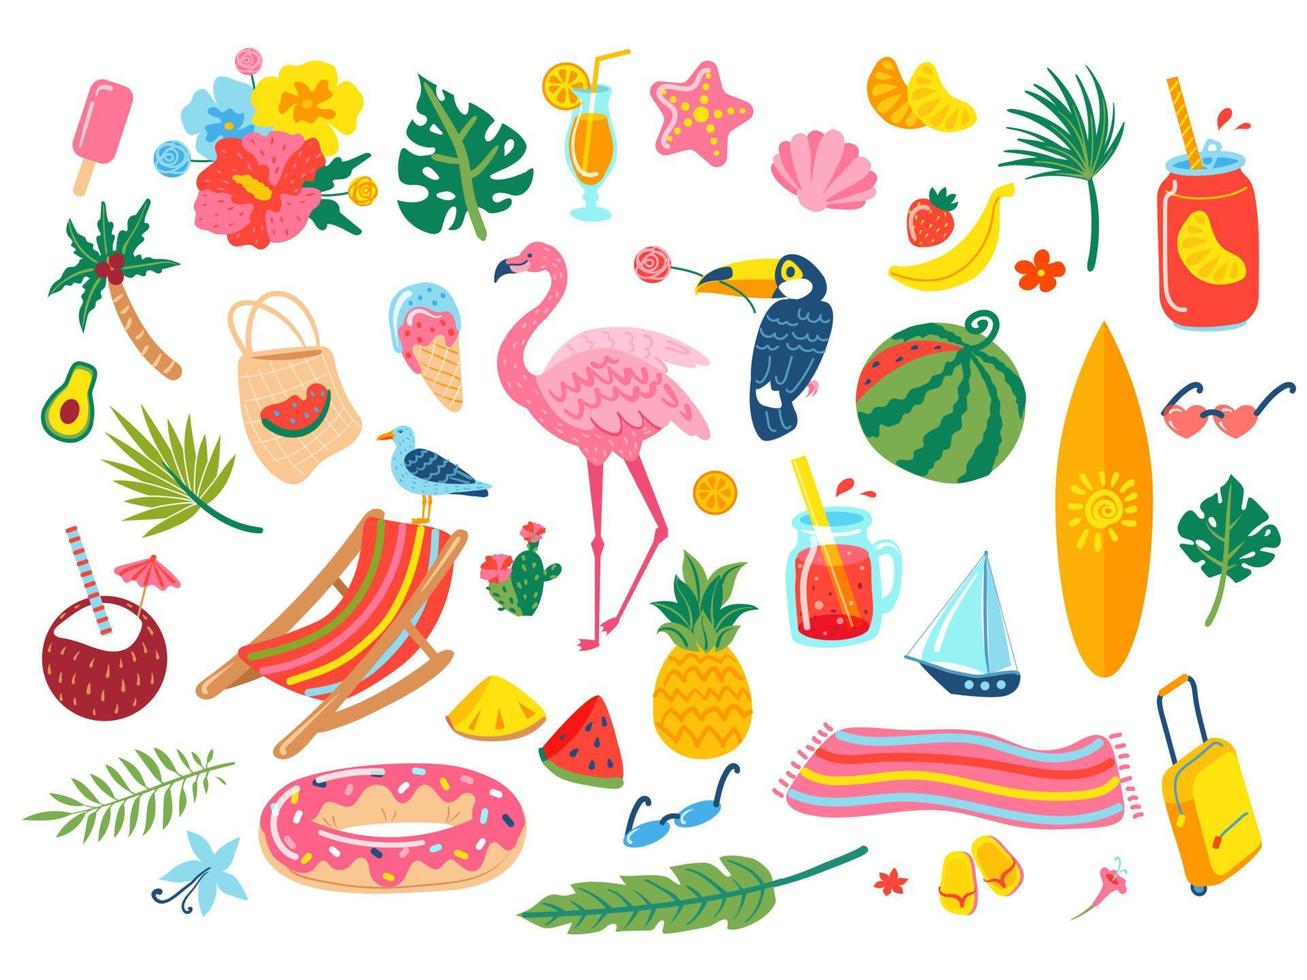 verão elementos. coquetel bebidas, refrigerante, tropical folhas, flores, abacaxi, melancia, flamingo, tucano. mão desenhado de praia período de férias rabisco vetor conjunto